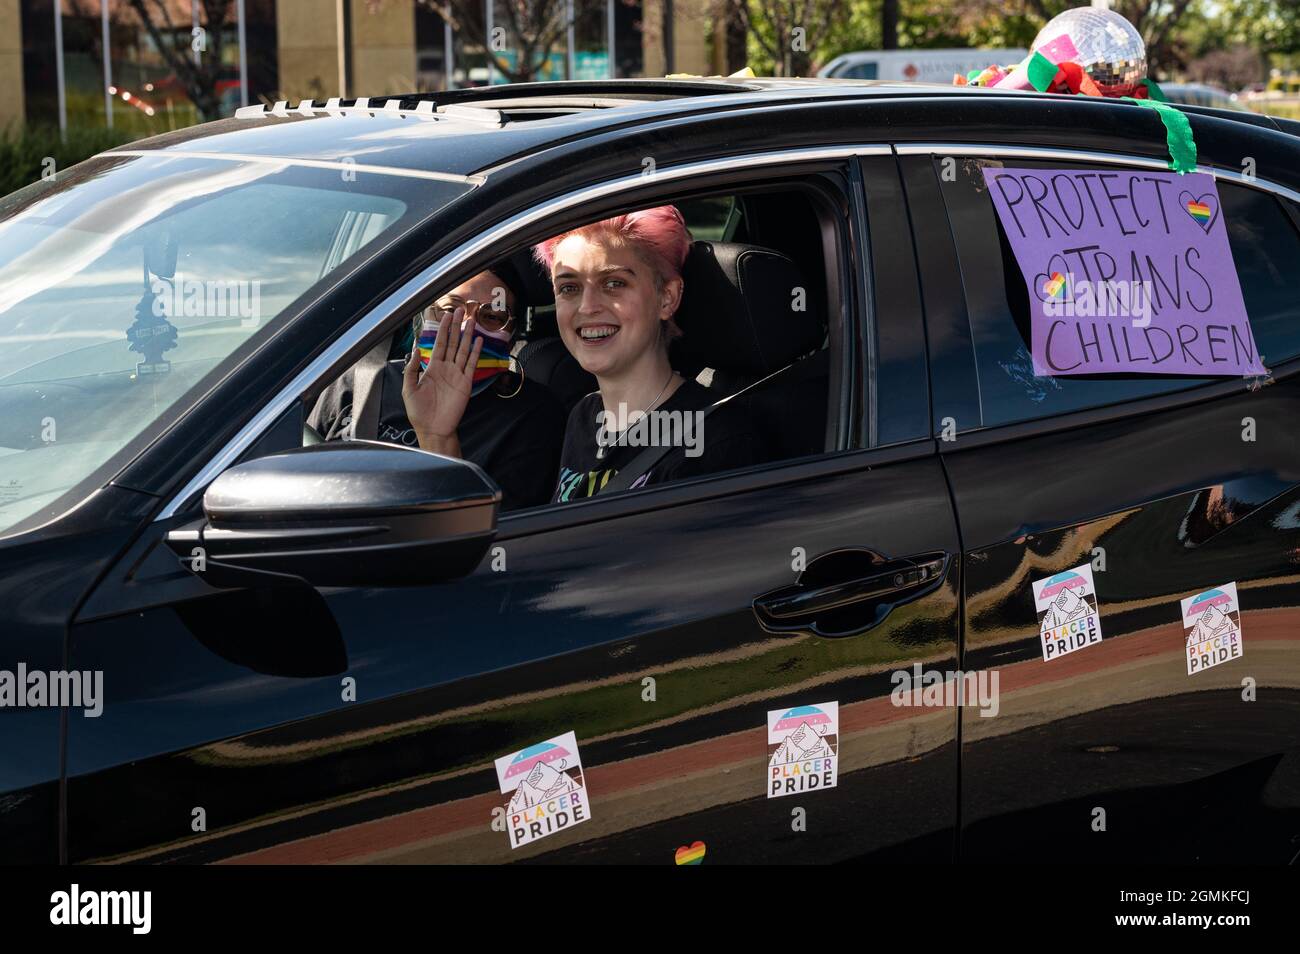 ROSEVILLE, CA, ÉTATS-UNIS - SEPT. 19, 2021: Une jeune personne avec des cheveux roses sourit et une personne dans un masque arc-en-ciel vagues tout en conduisant un 'protéger Trans enfant Banque D'Images